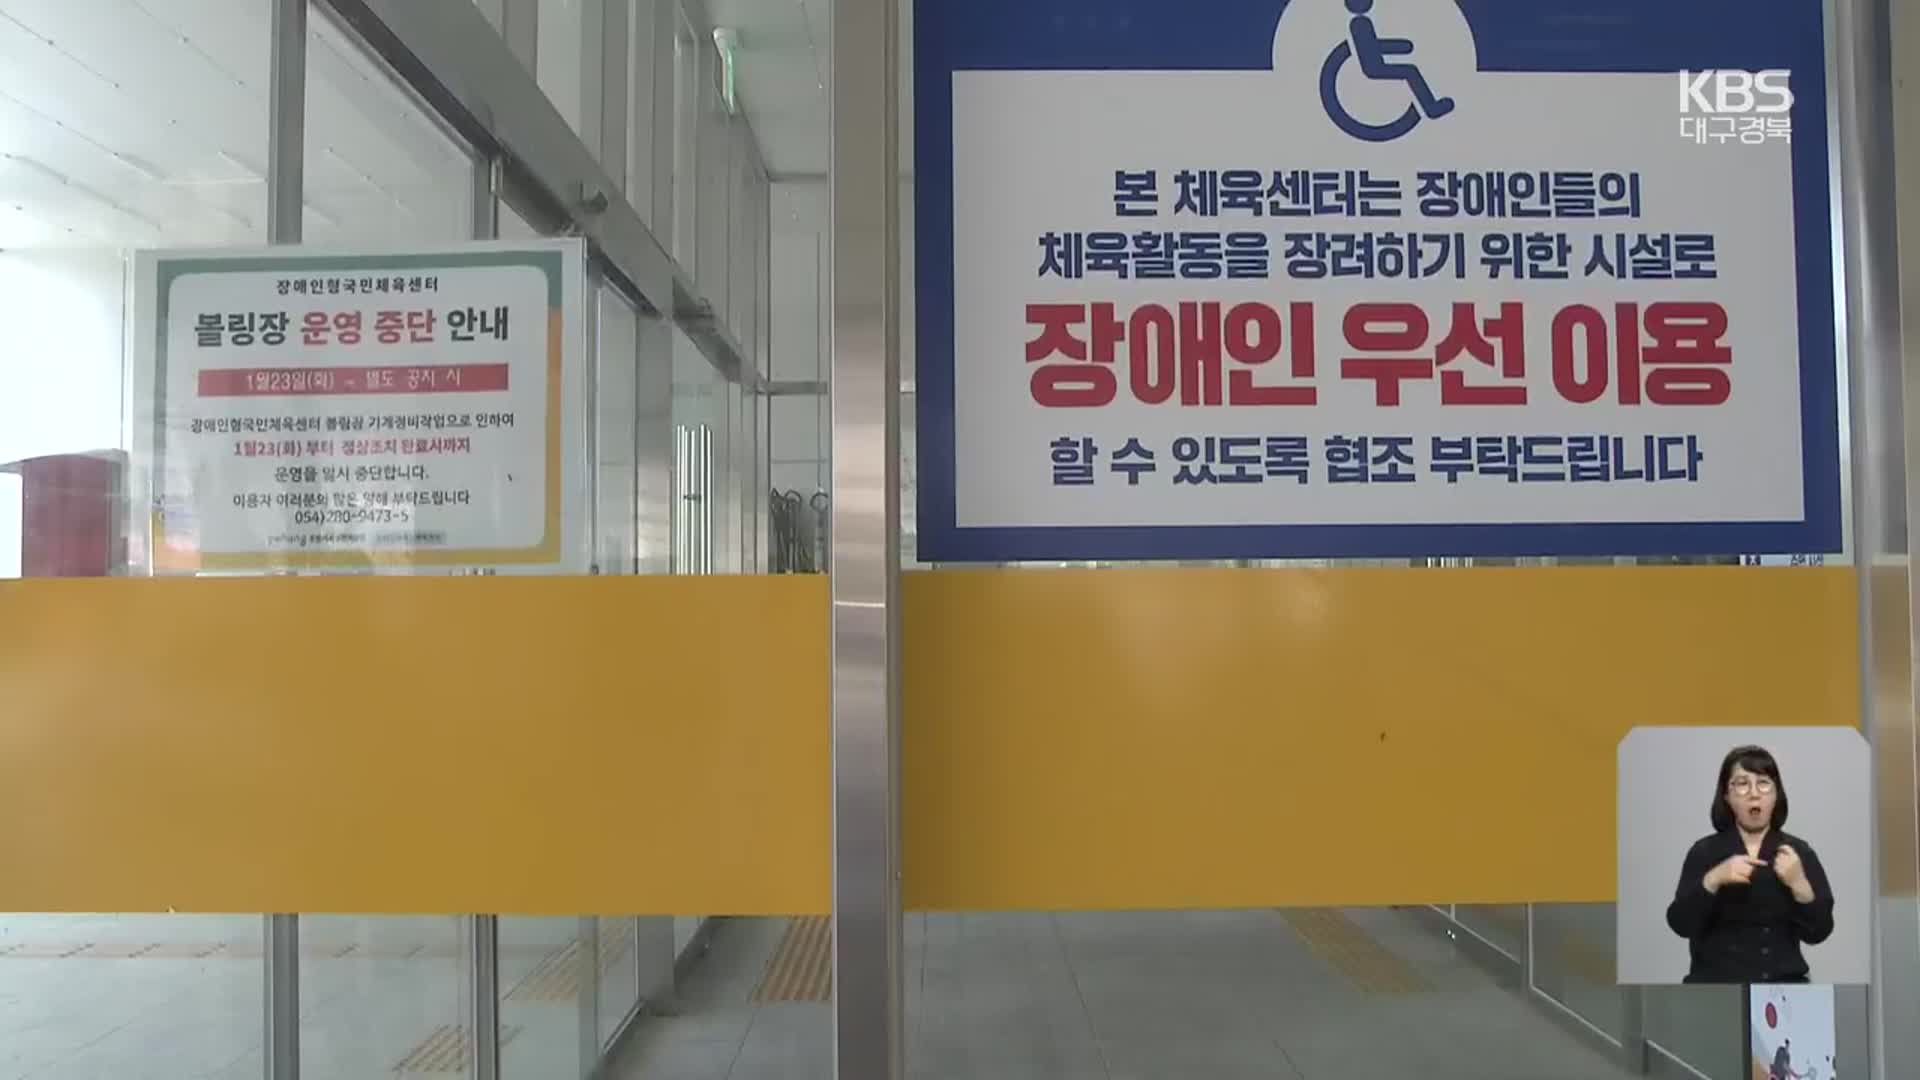 수백억 원 들인 장애인 체육시설 석 달만에 폐쇄